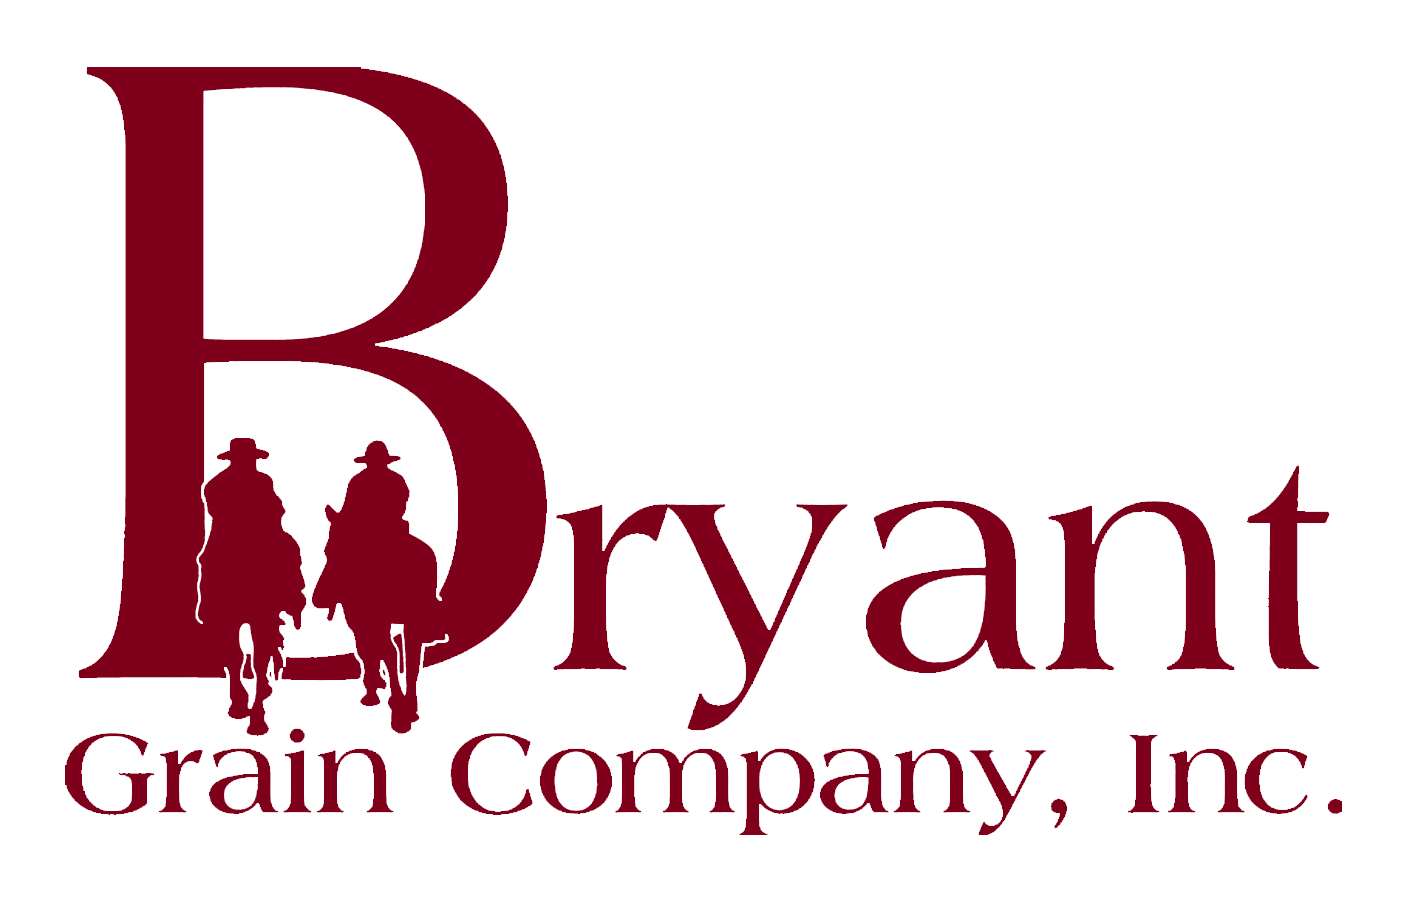 Grain Company Logo - Bryant Grain Company